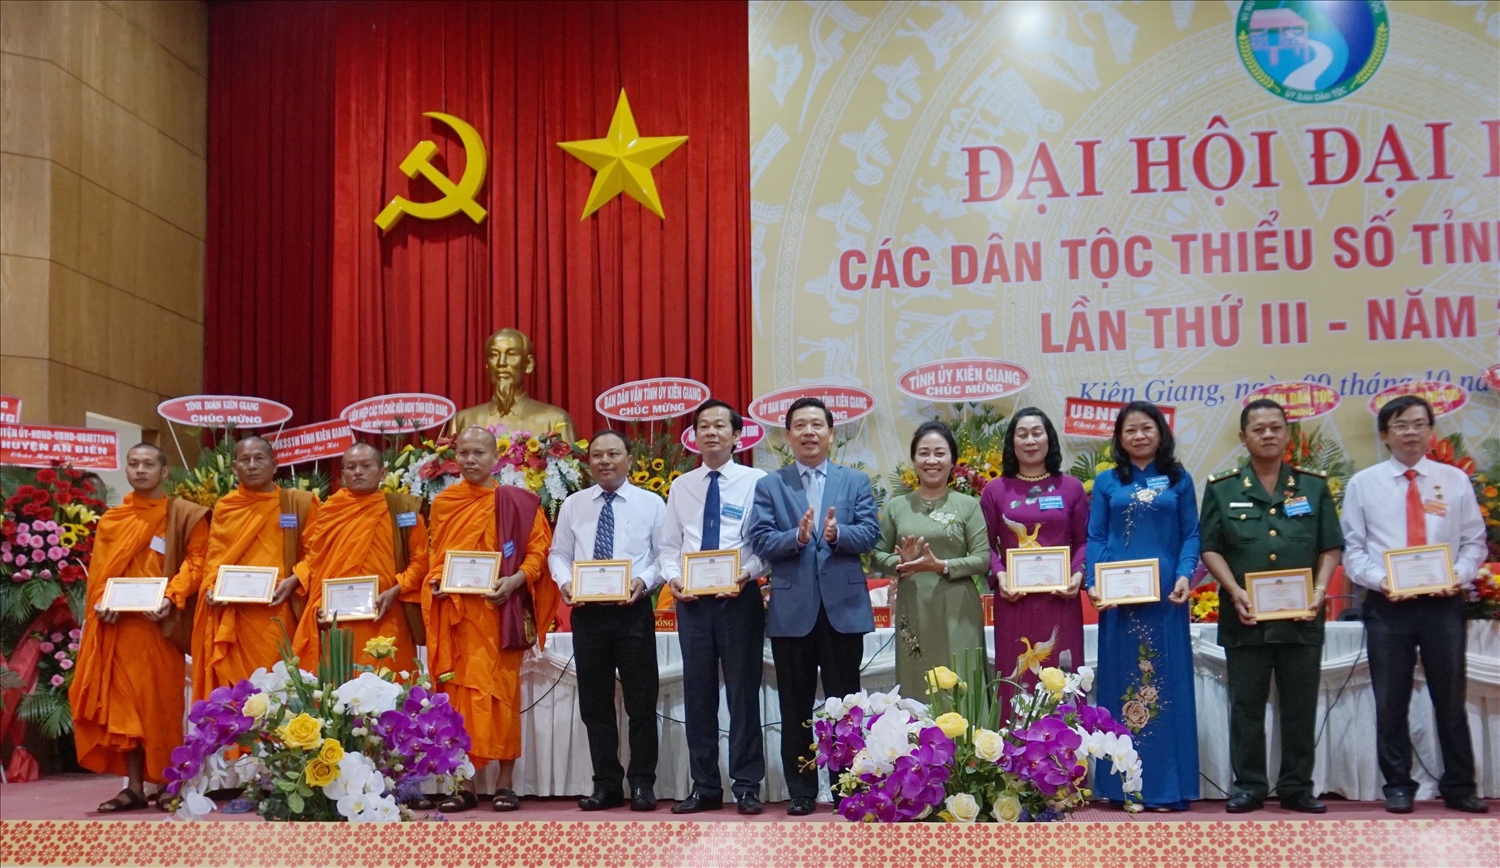 Ban tổ chức trao kỷ niệm chương trao Kỷ niệm chương “Vì sự nghiệp phát triển các dân tộc” cho các cá nhân tại Đại hội đại biểu các DTTS cấp cấp tỉnh lần thứ III năm 2019 